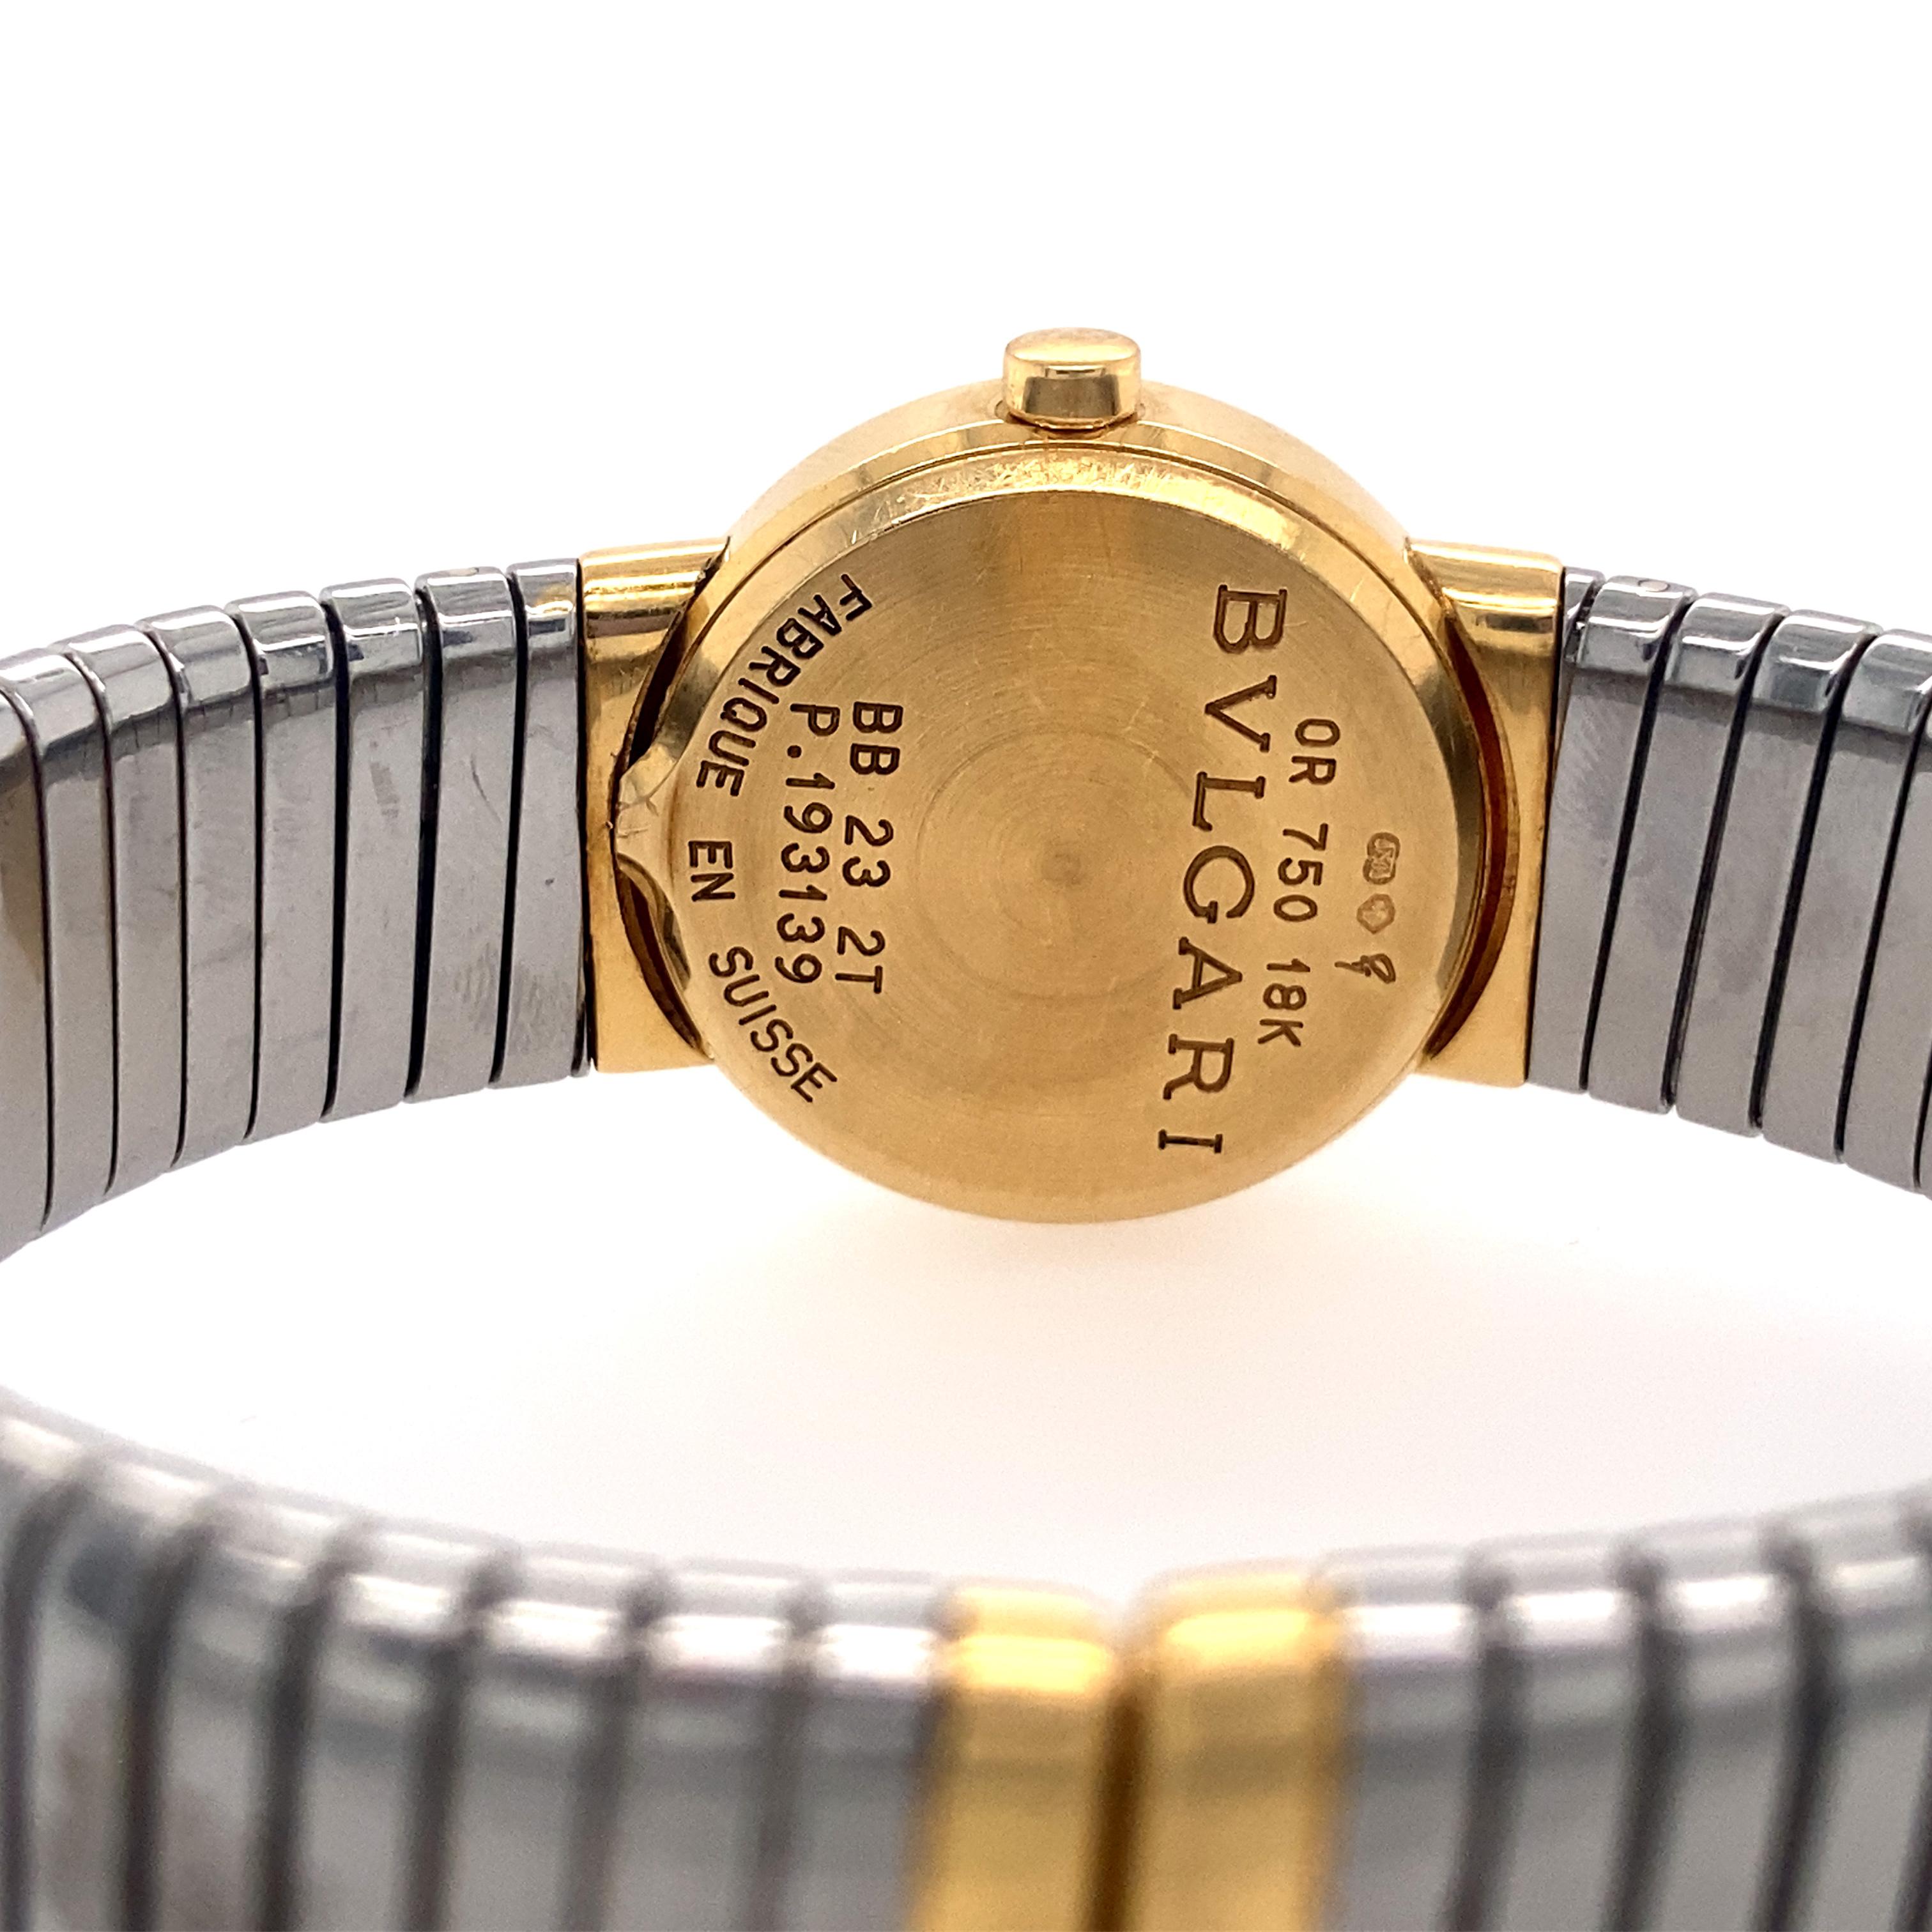 Montre bracelet Tubogas de Bulgari, dotée d'un mouvement à quartz de fabrication suisse, d'un cadran noir avec aiguilles et index en or, d'un boîtier de 23 mm en or jaune 18 carats et en acier inoxydable avec lunette en or jaune 18 carats, et d'un